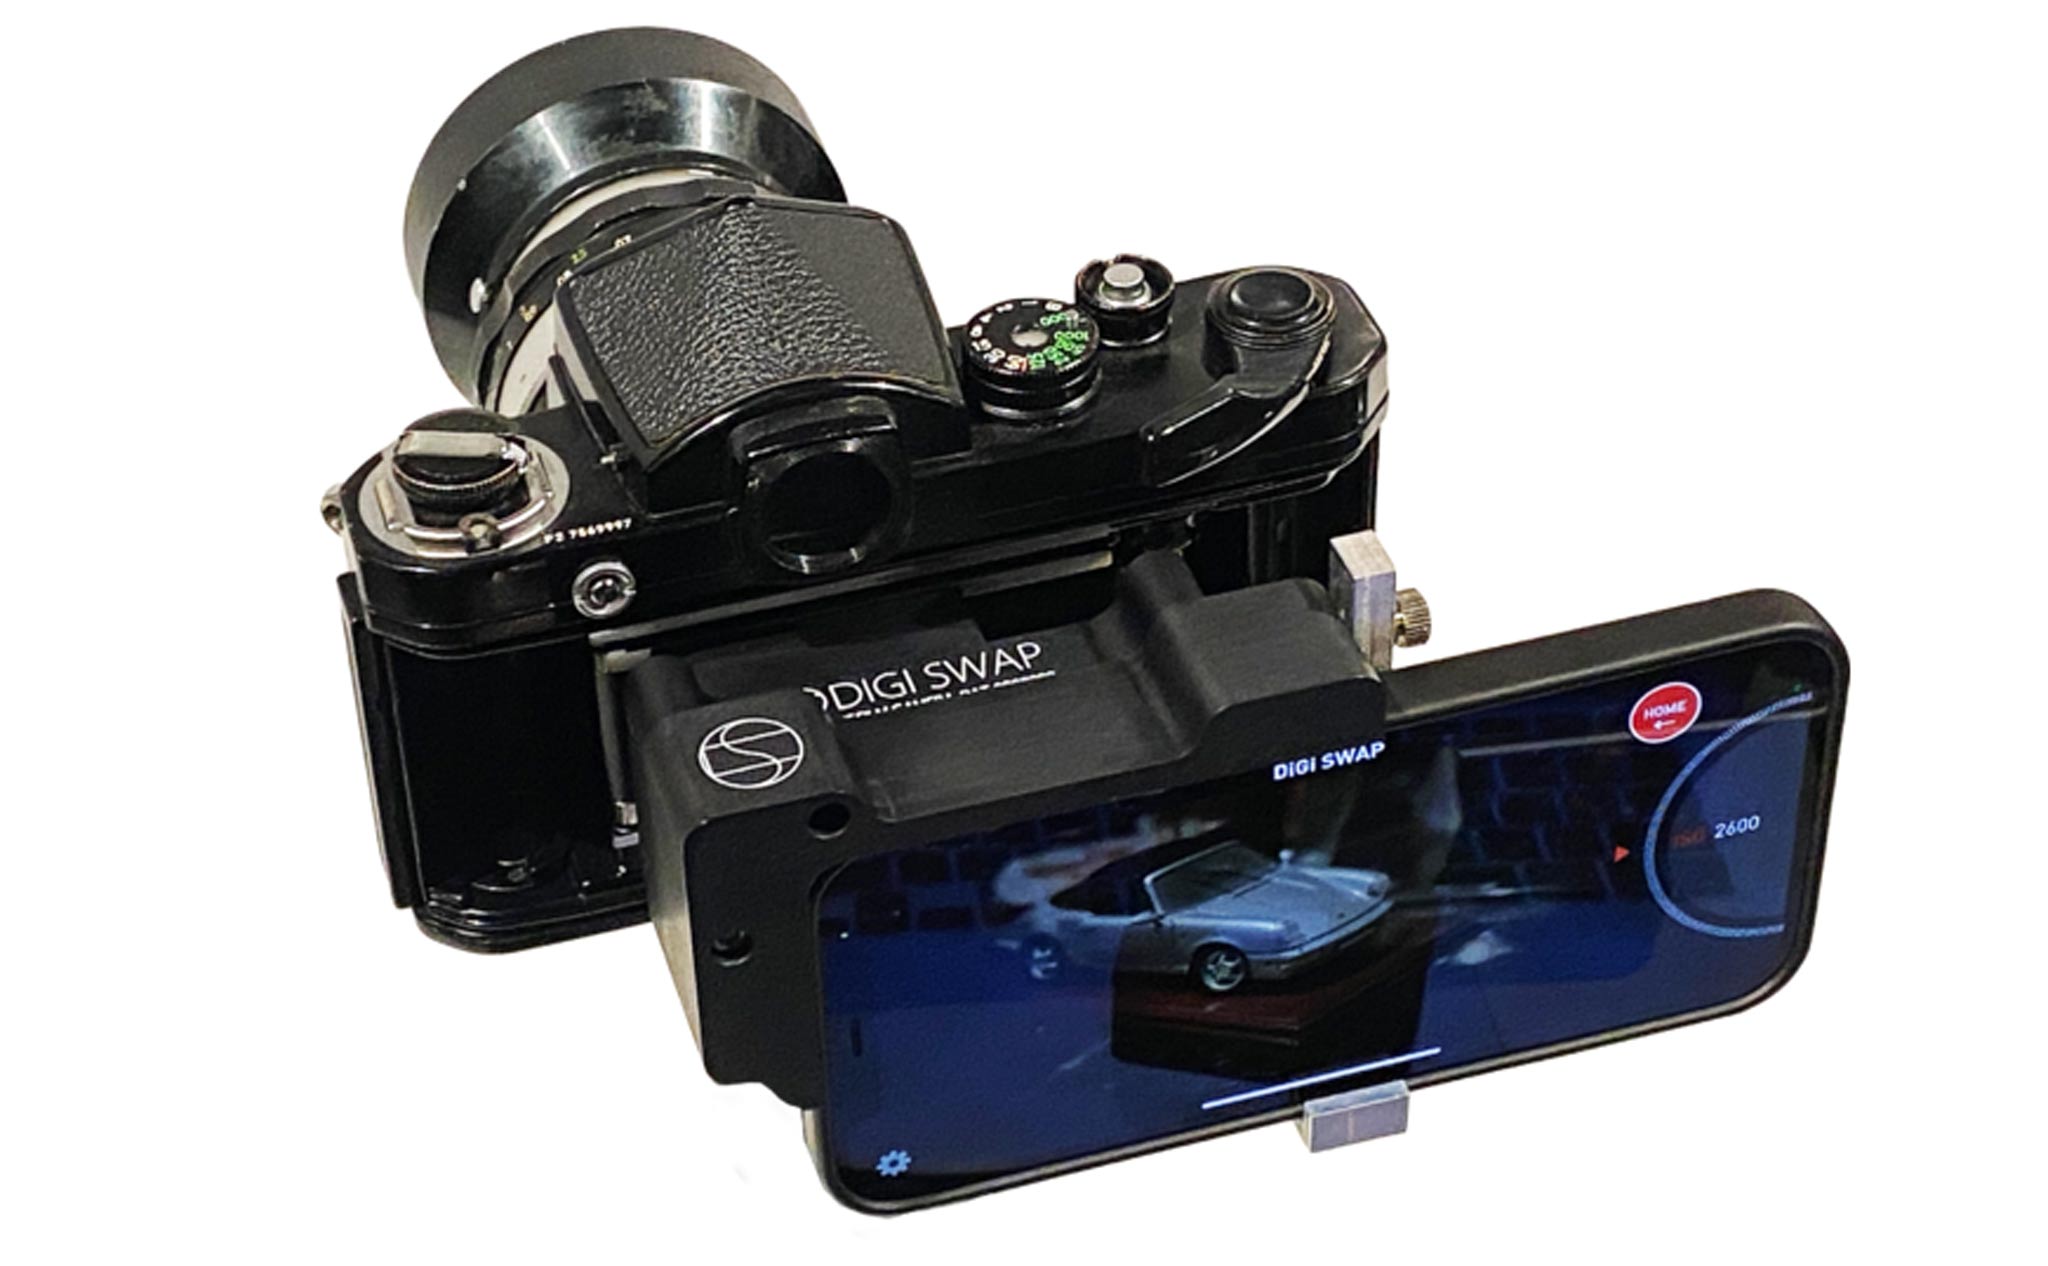 DIGI SWAP - thiết bị biến máy ảnh phim thành máy Digital thông qua iPhone